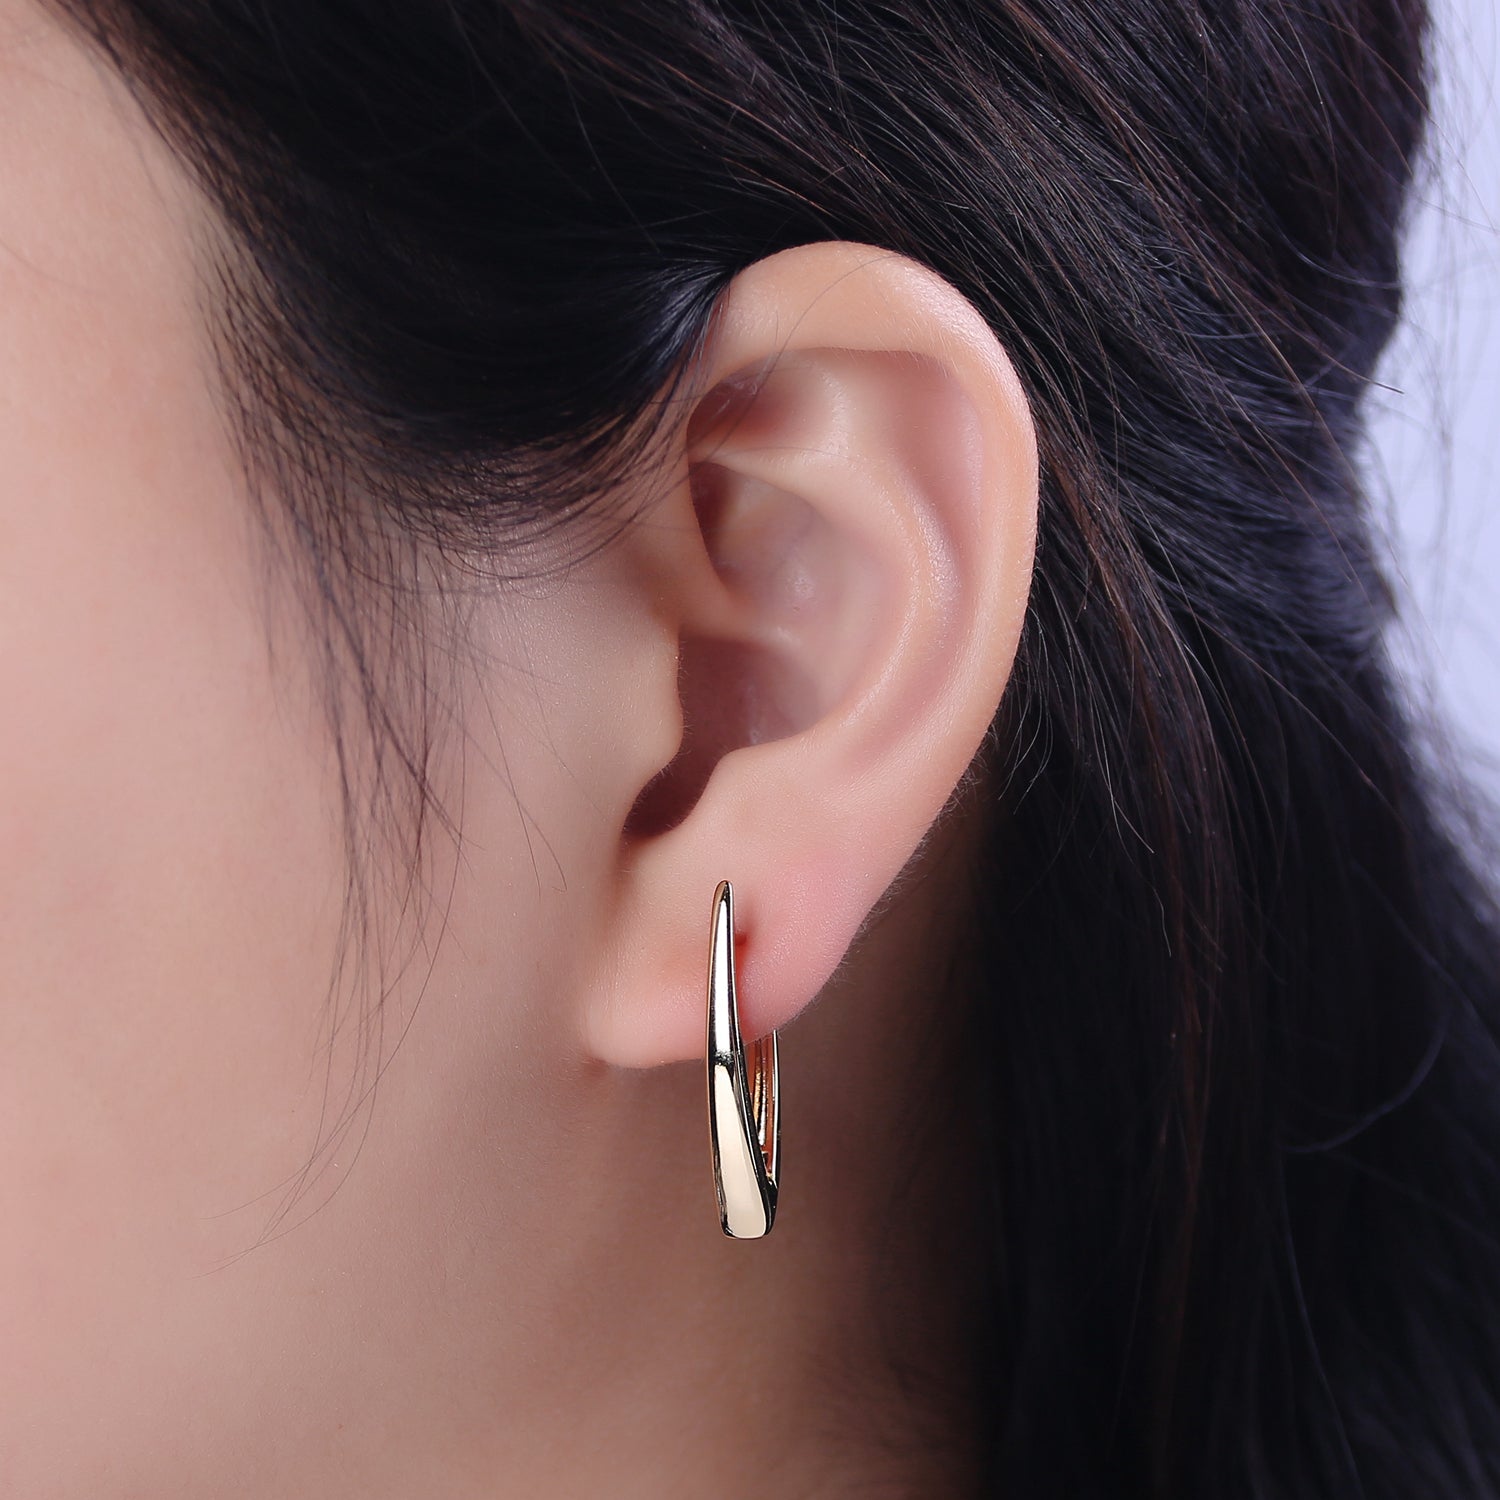 Minimalist Hoop Earring latch back Lever-backs Ear Hooks 14k Gold Filled hypoallergenic earrings T-287 - DLUXCA